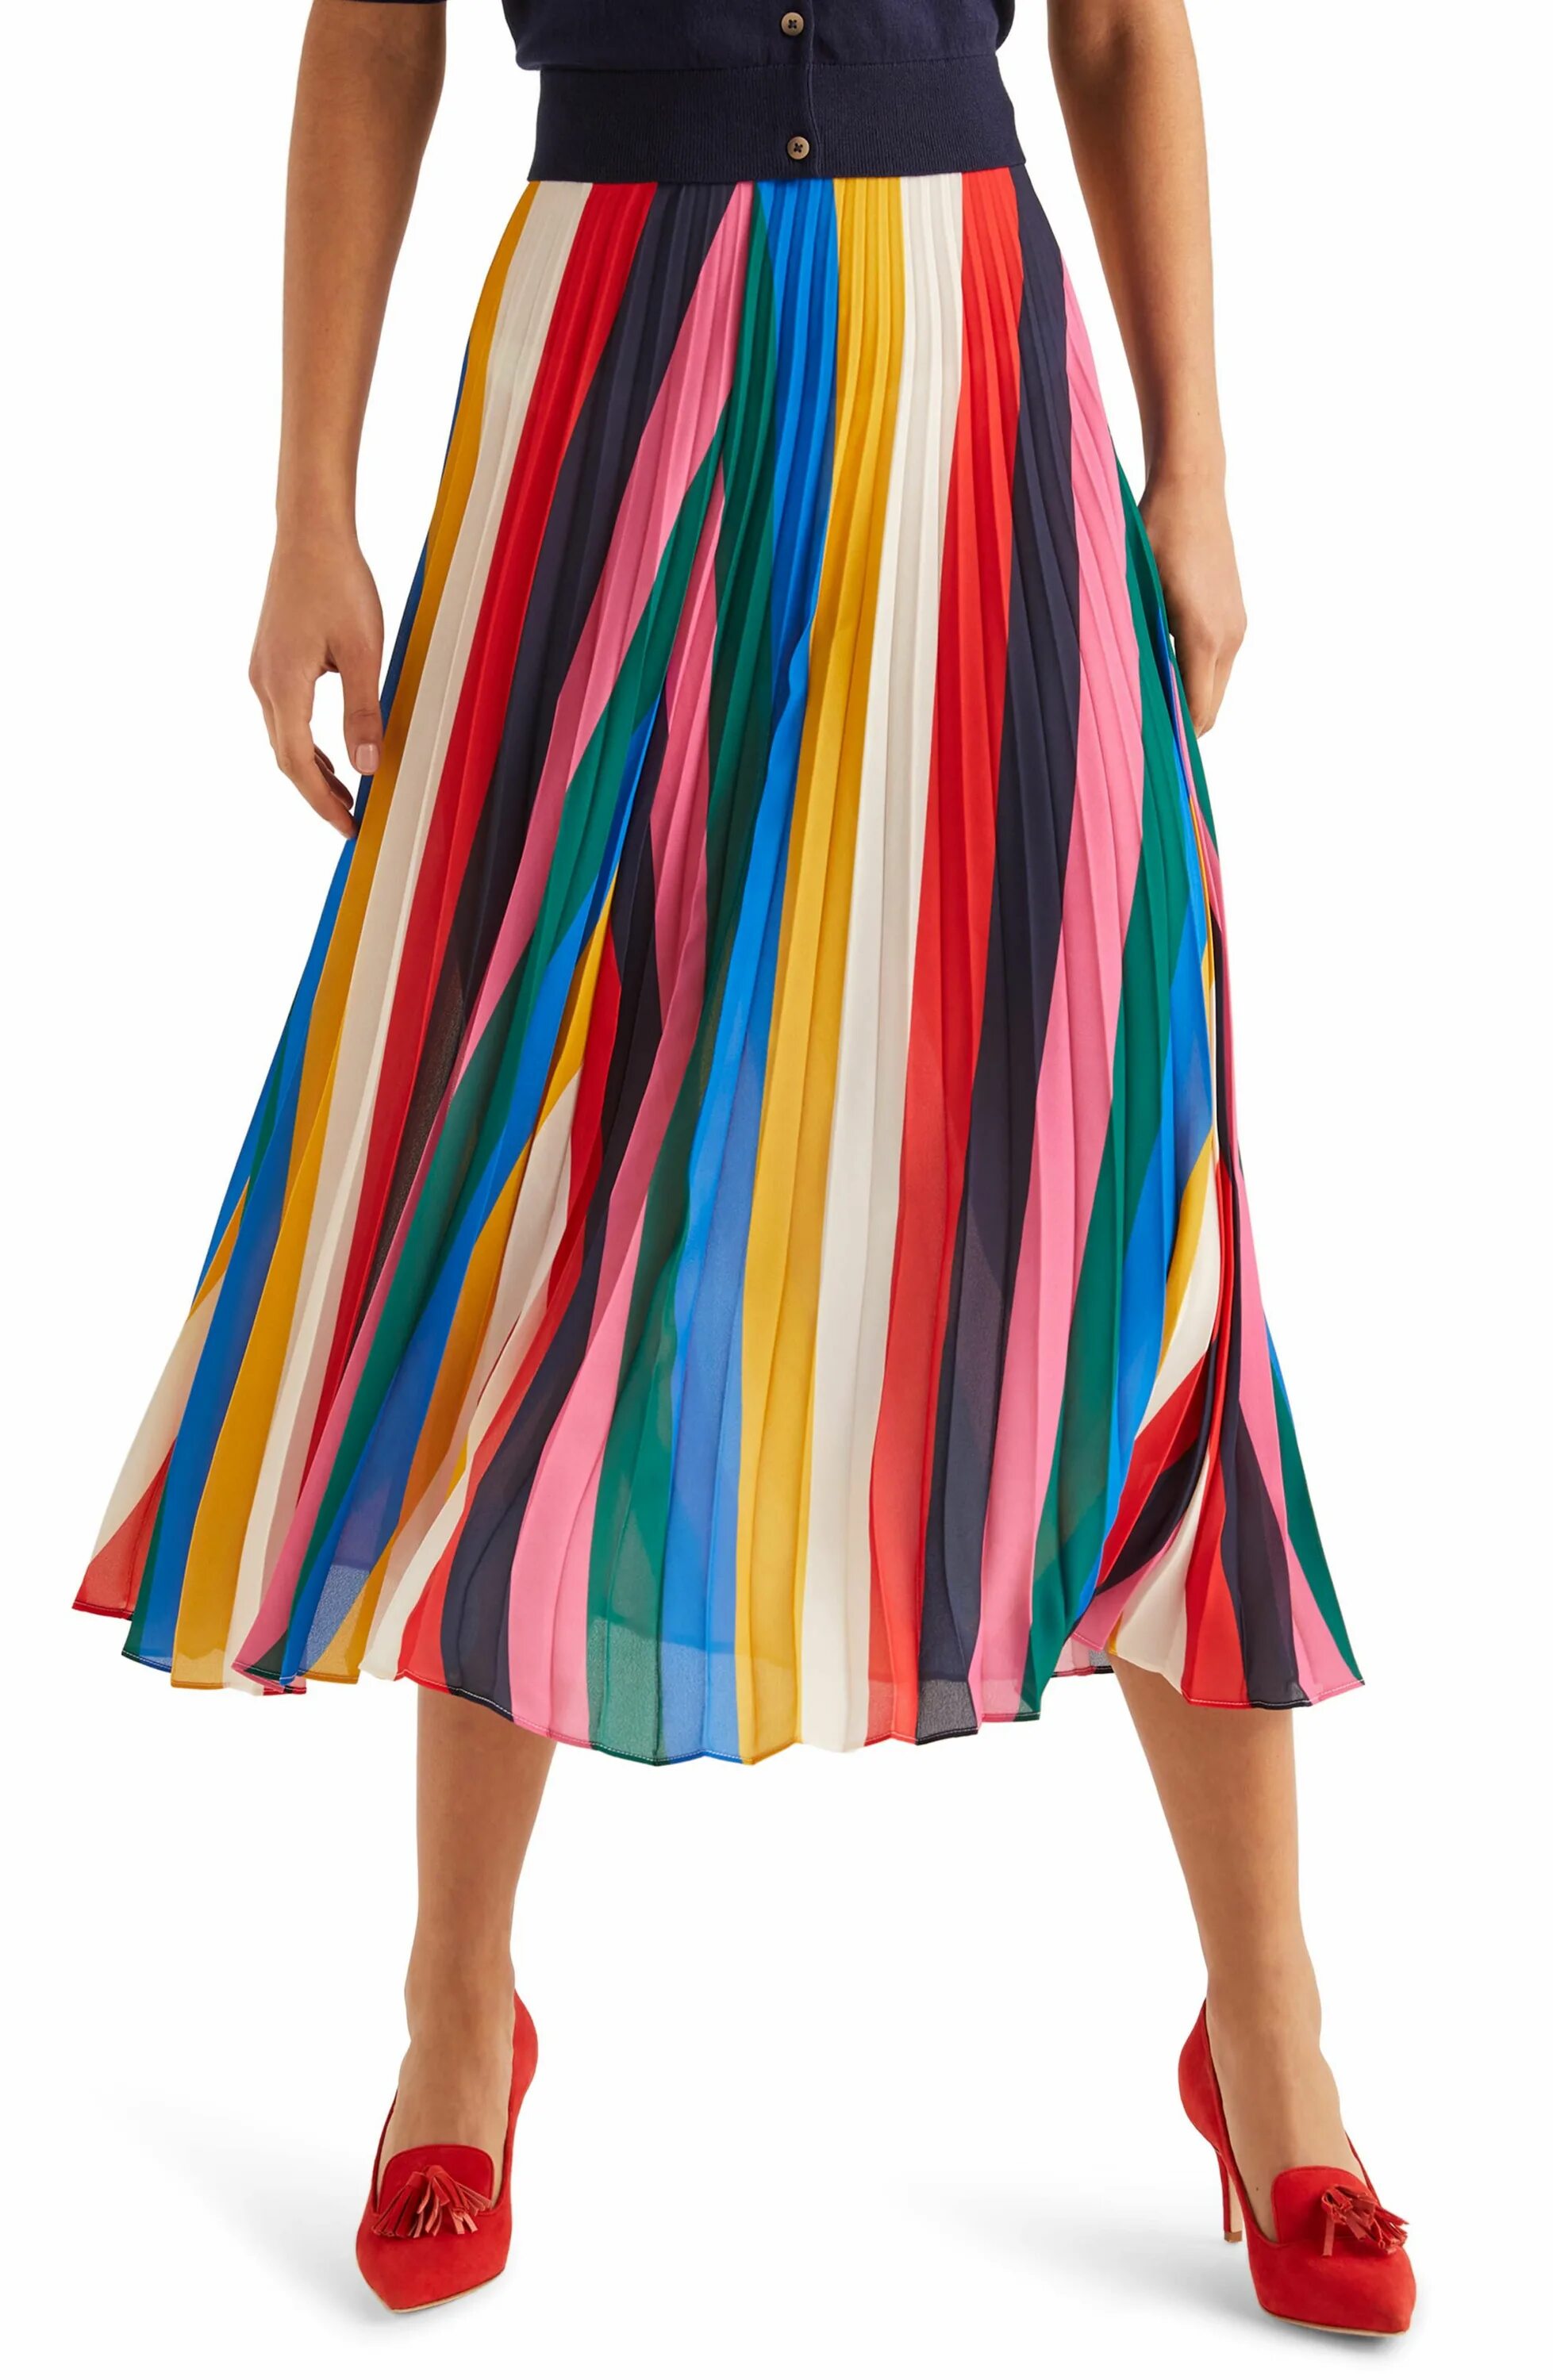 Цветные юбки. Юбка плиссированная разноцветная. Разноцветные юбки плиссированные. Юбка плиссированная миди разноцветная. Юбка с разноцветными клиньями.